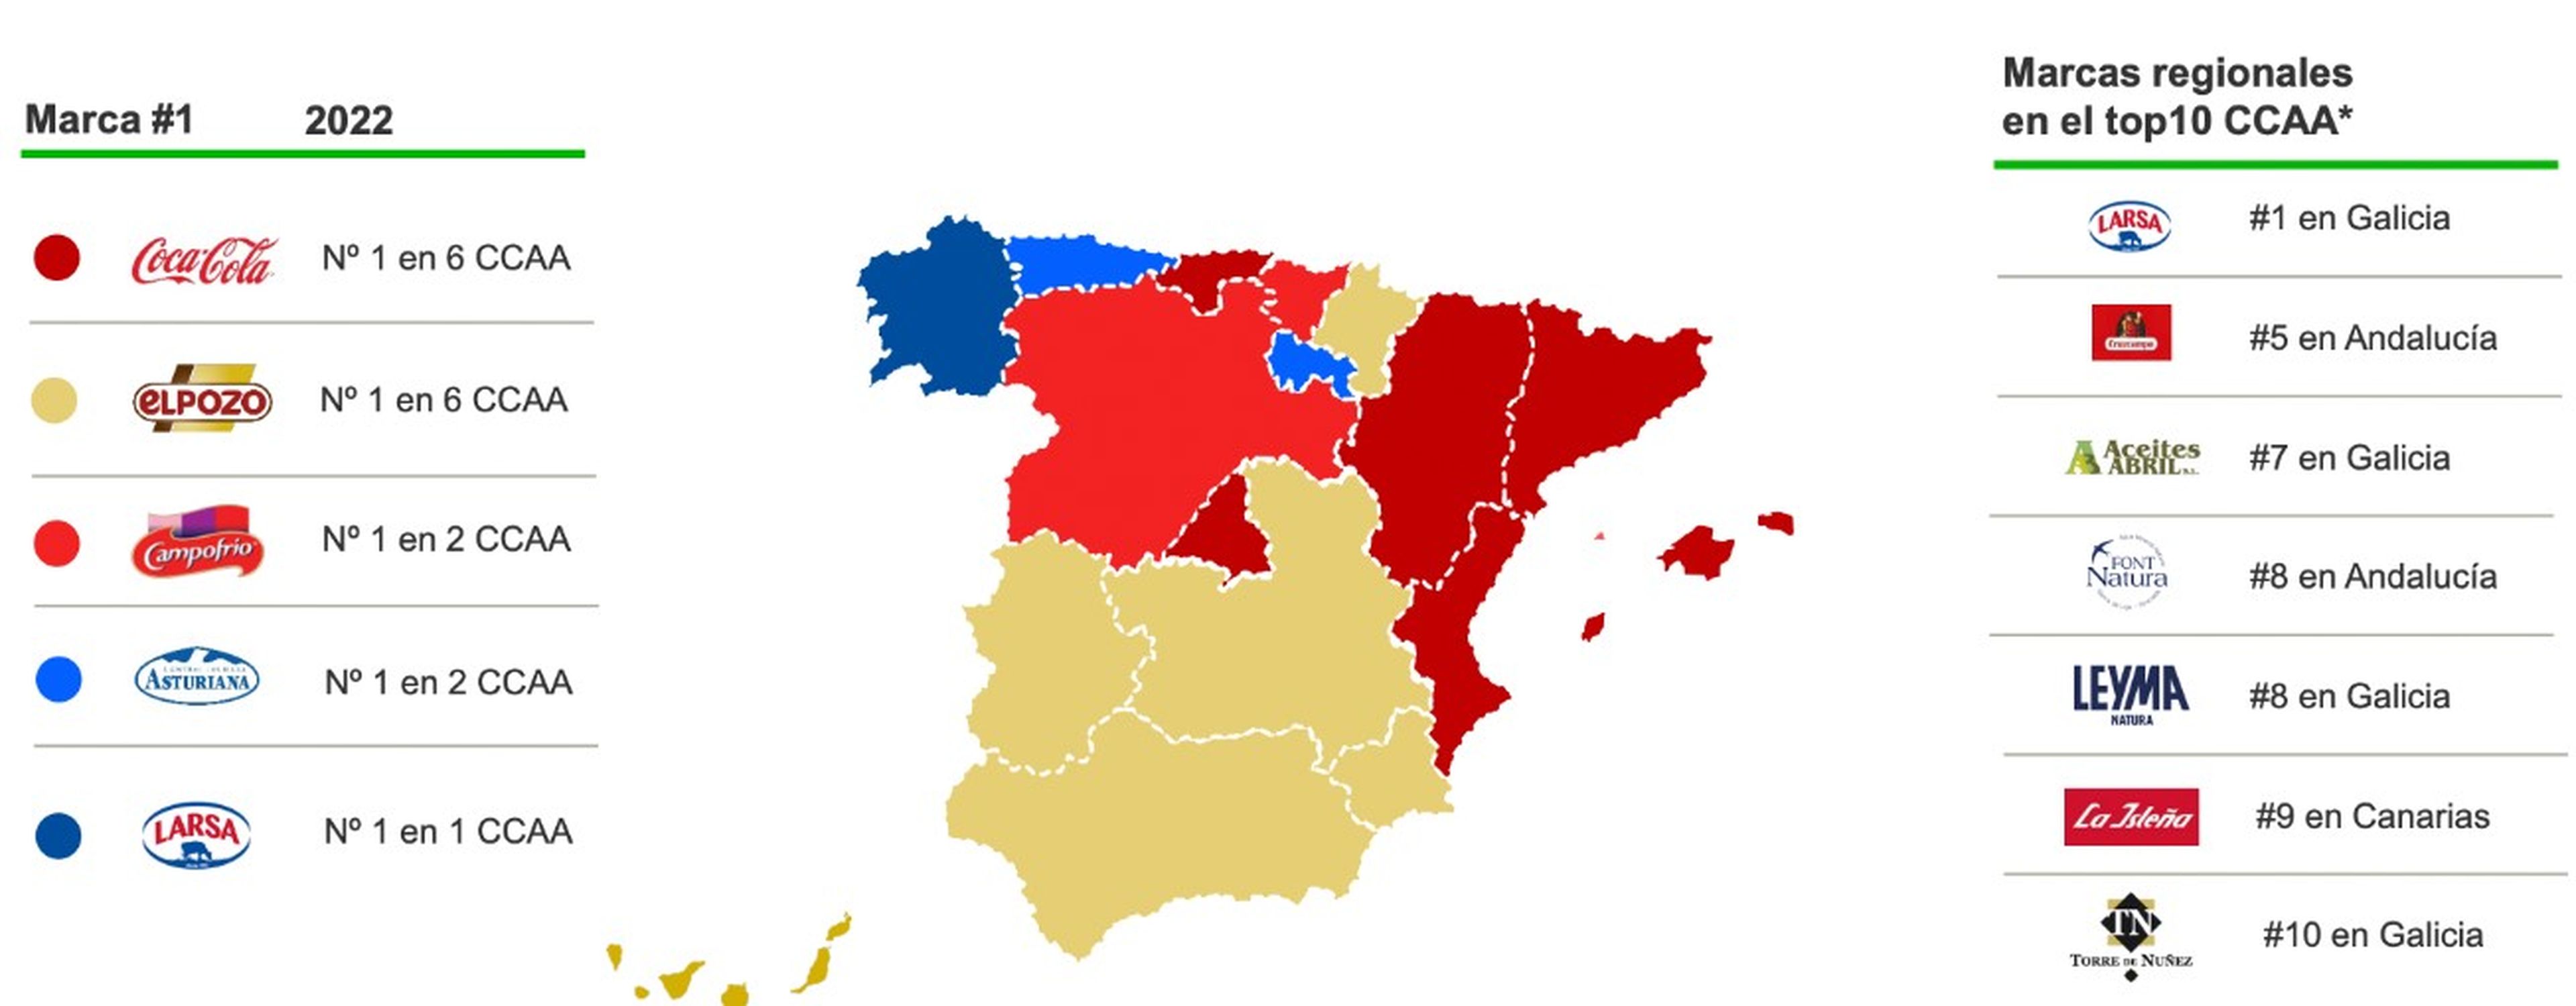 Marcas líderes en España, por comunidades autónomas.